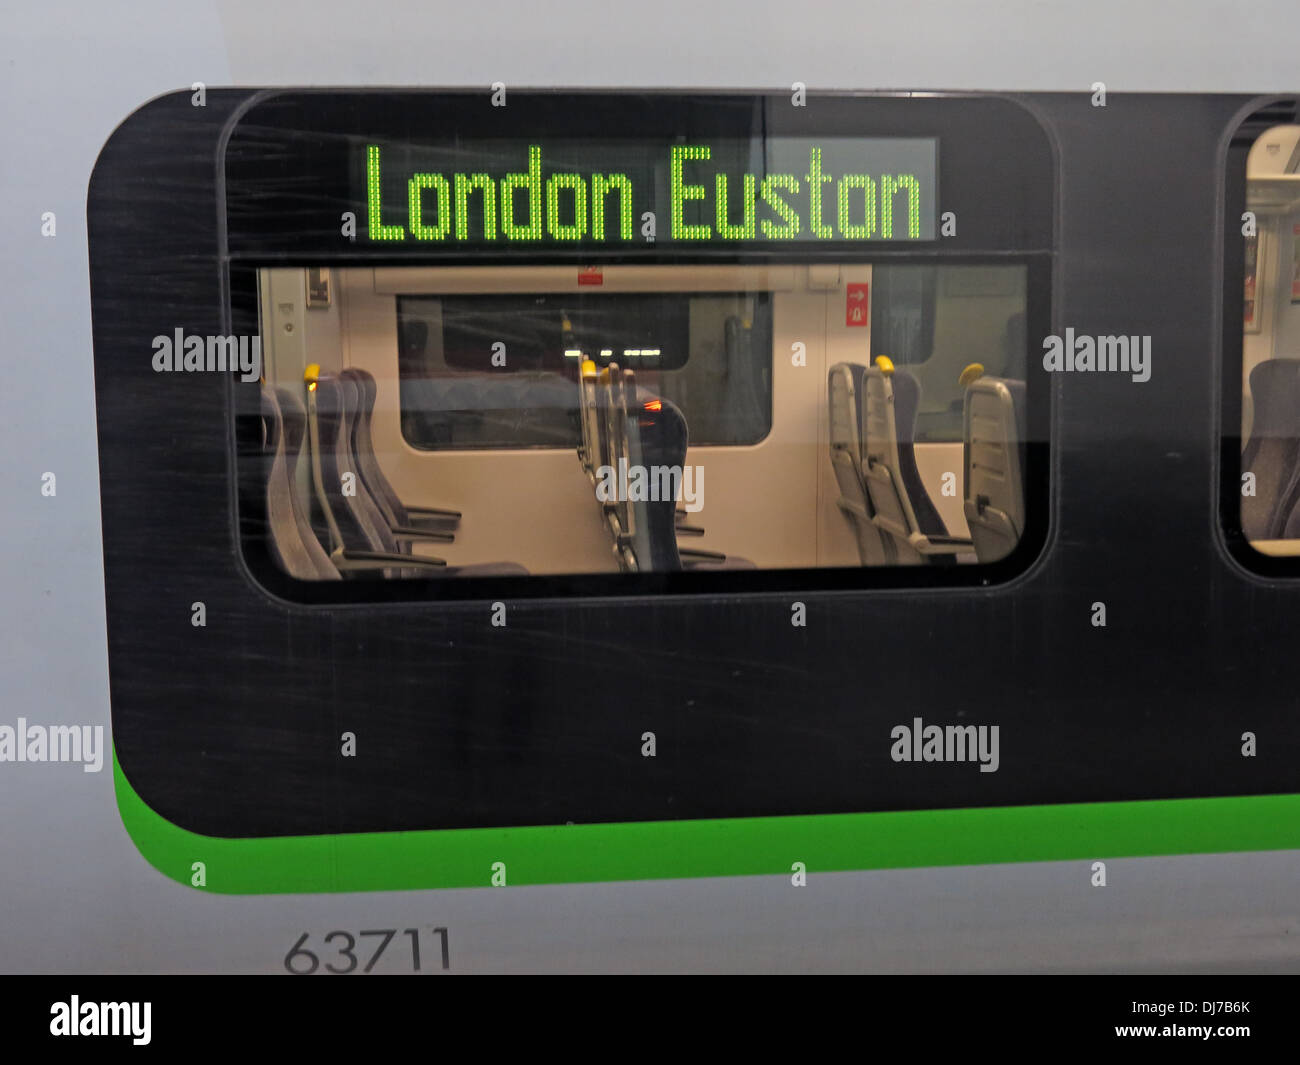 London Midland Railway Coach 63711, à la gare de Londres Euston, Angleterre, Royaume-Uni Banque D'Images